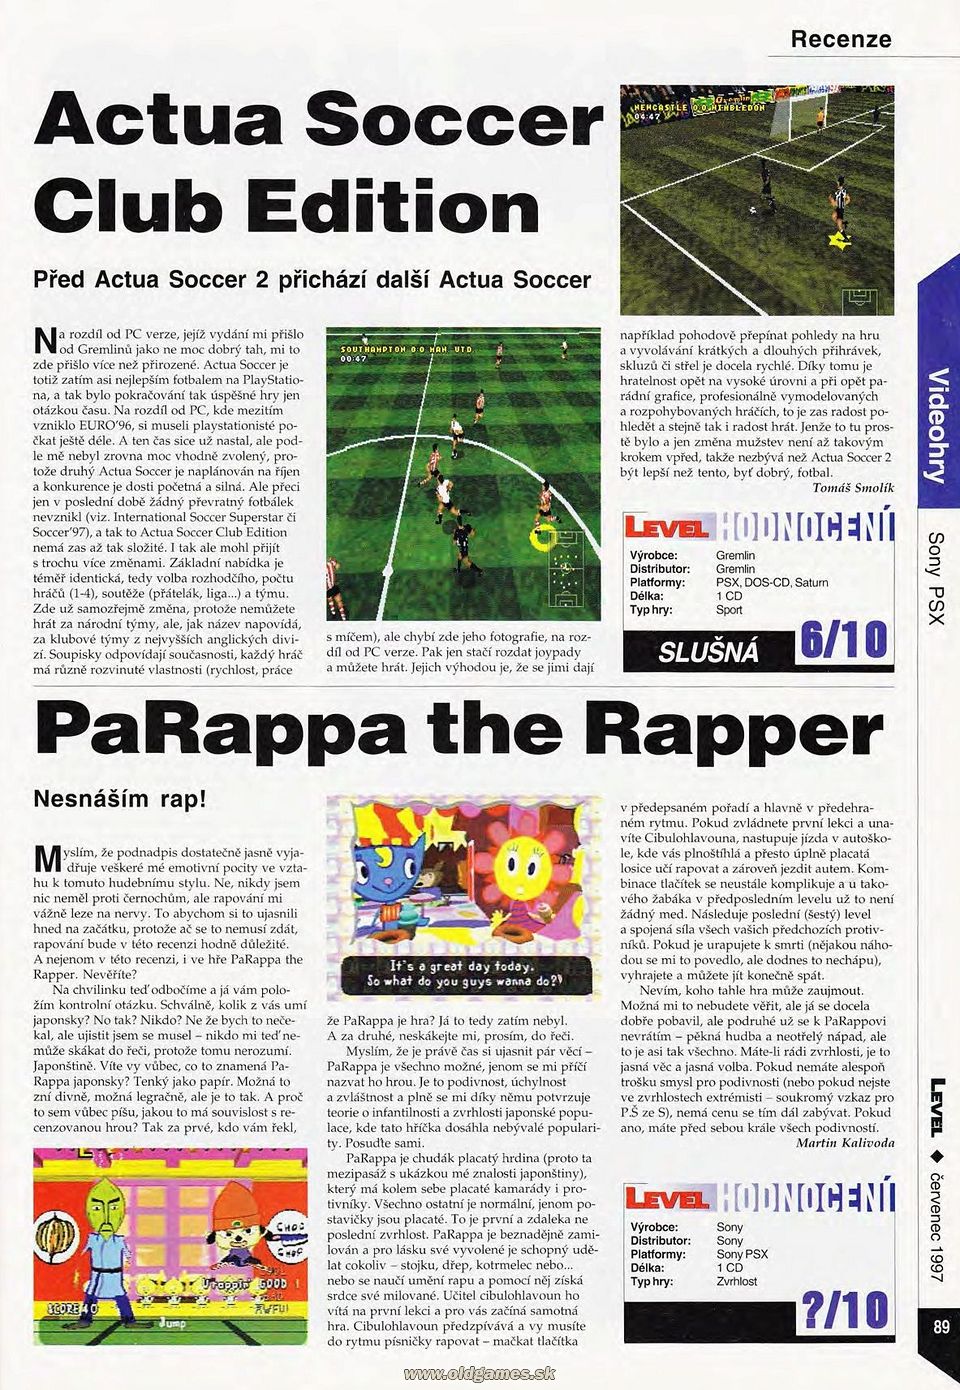 Actua Soccer Club Edition, PaRappa the Raper